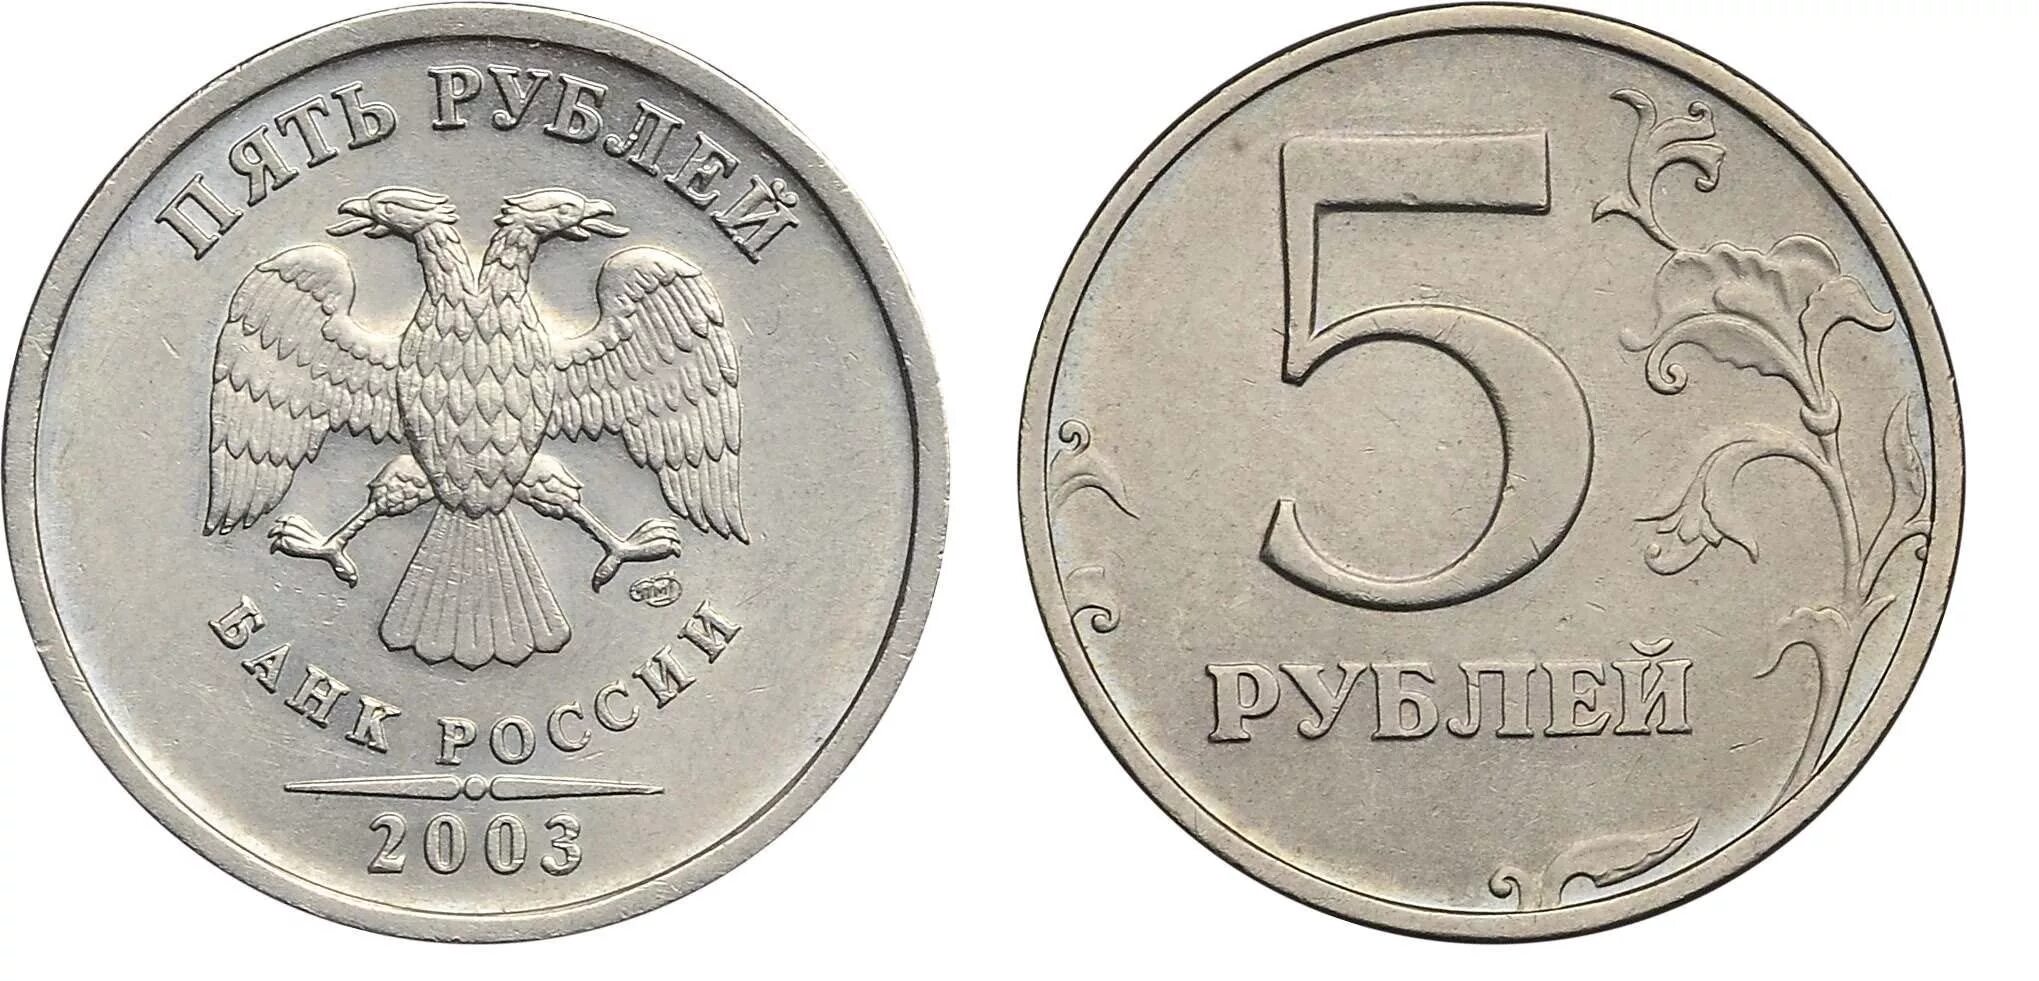 5 Рублей 1998 Московский монетный двор. 5 Рублей 1998 ММД. 5 Рублей 2008 СПМД. 5 Рублей 2008 года СПМД. 5 рублей стороны